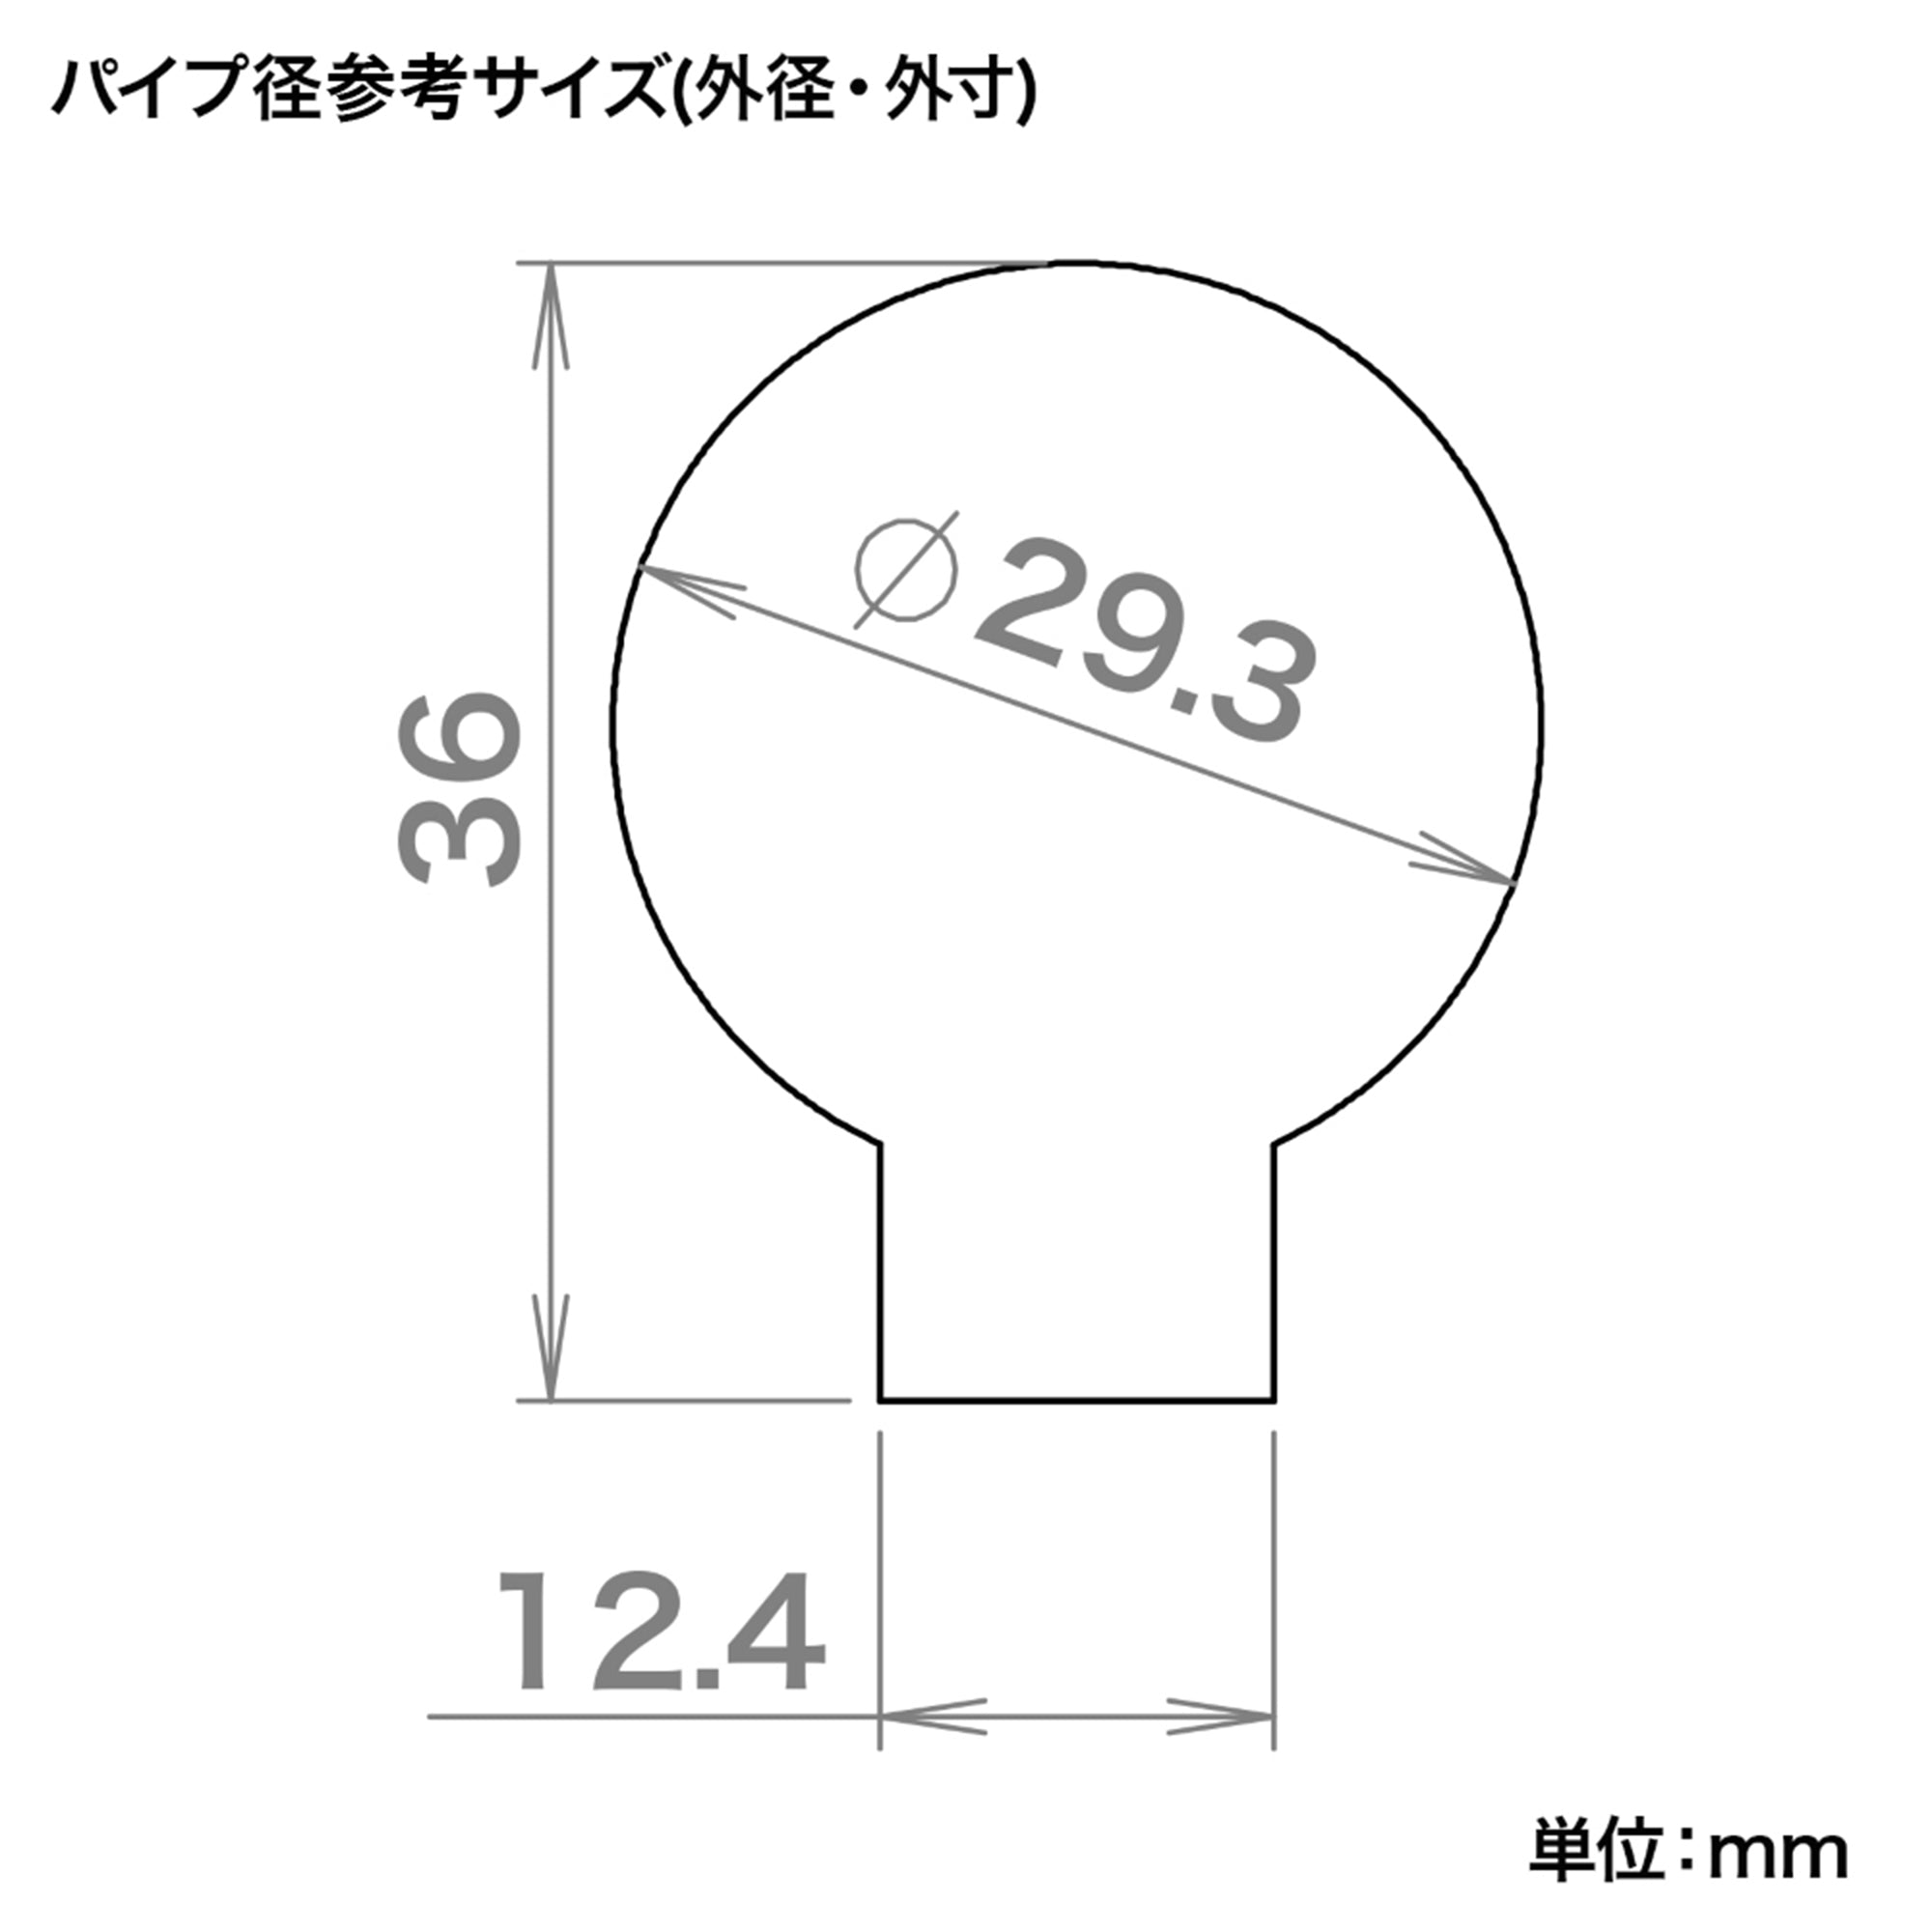 M4オフセットクイックリリースカーボンストックパイプ(東京マルイ電動ガン スタンダードタイプ)[FirstFactory/ファーストファクト